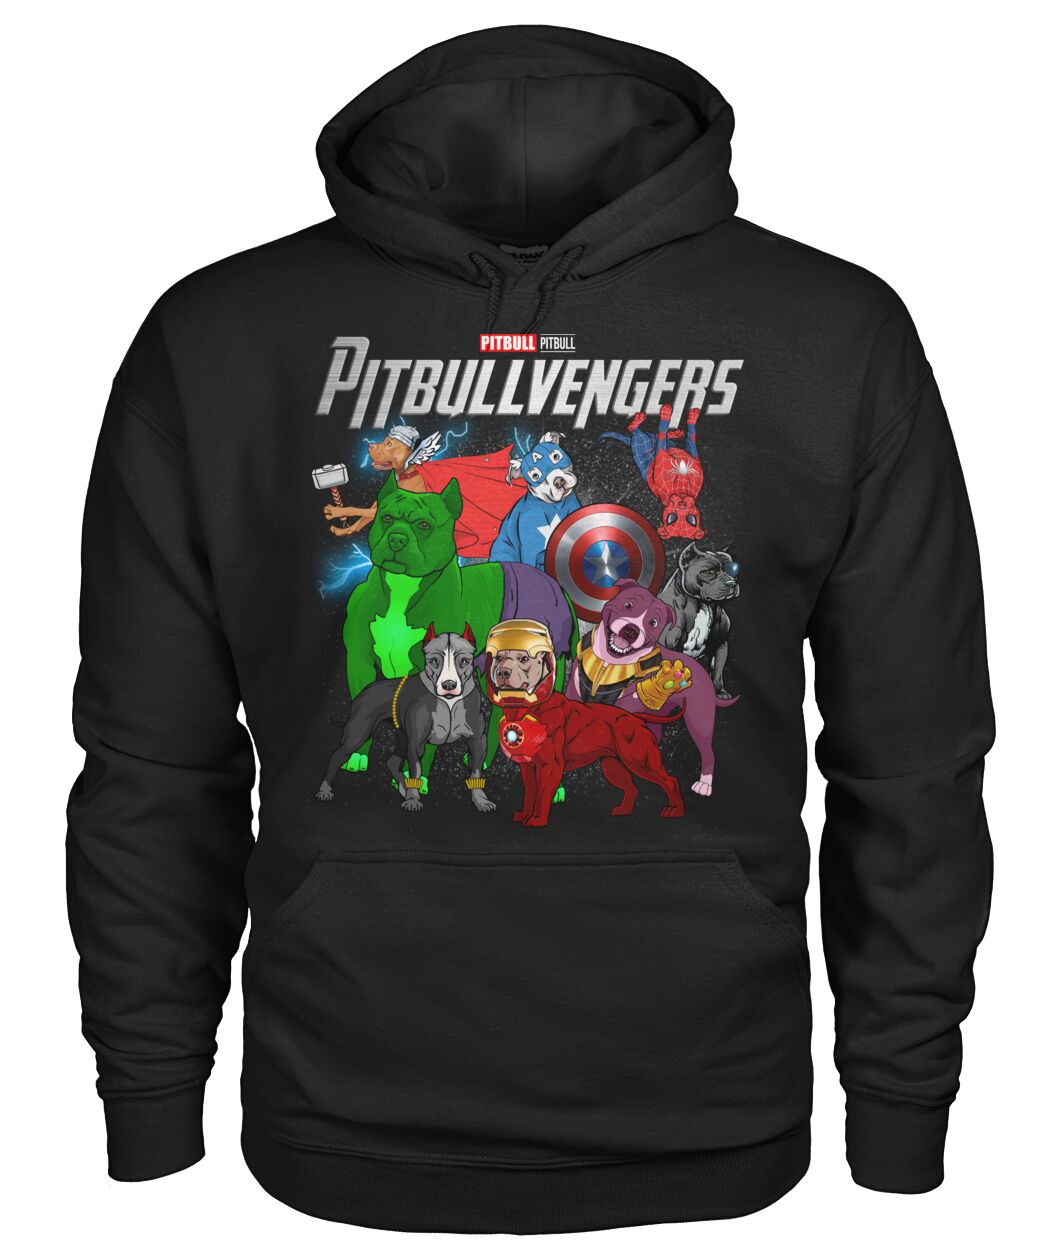 Pitbullvengers 3D Hoodie, Shirt 9